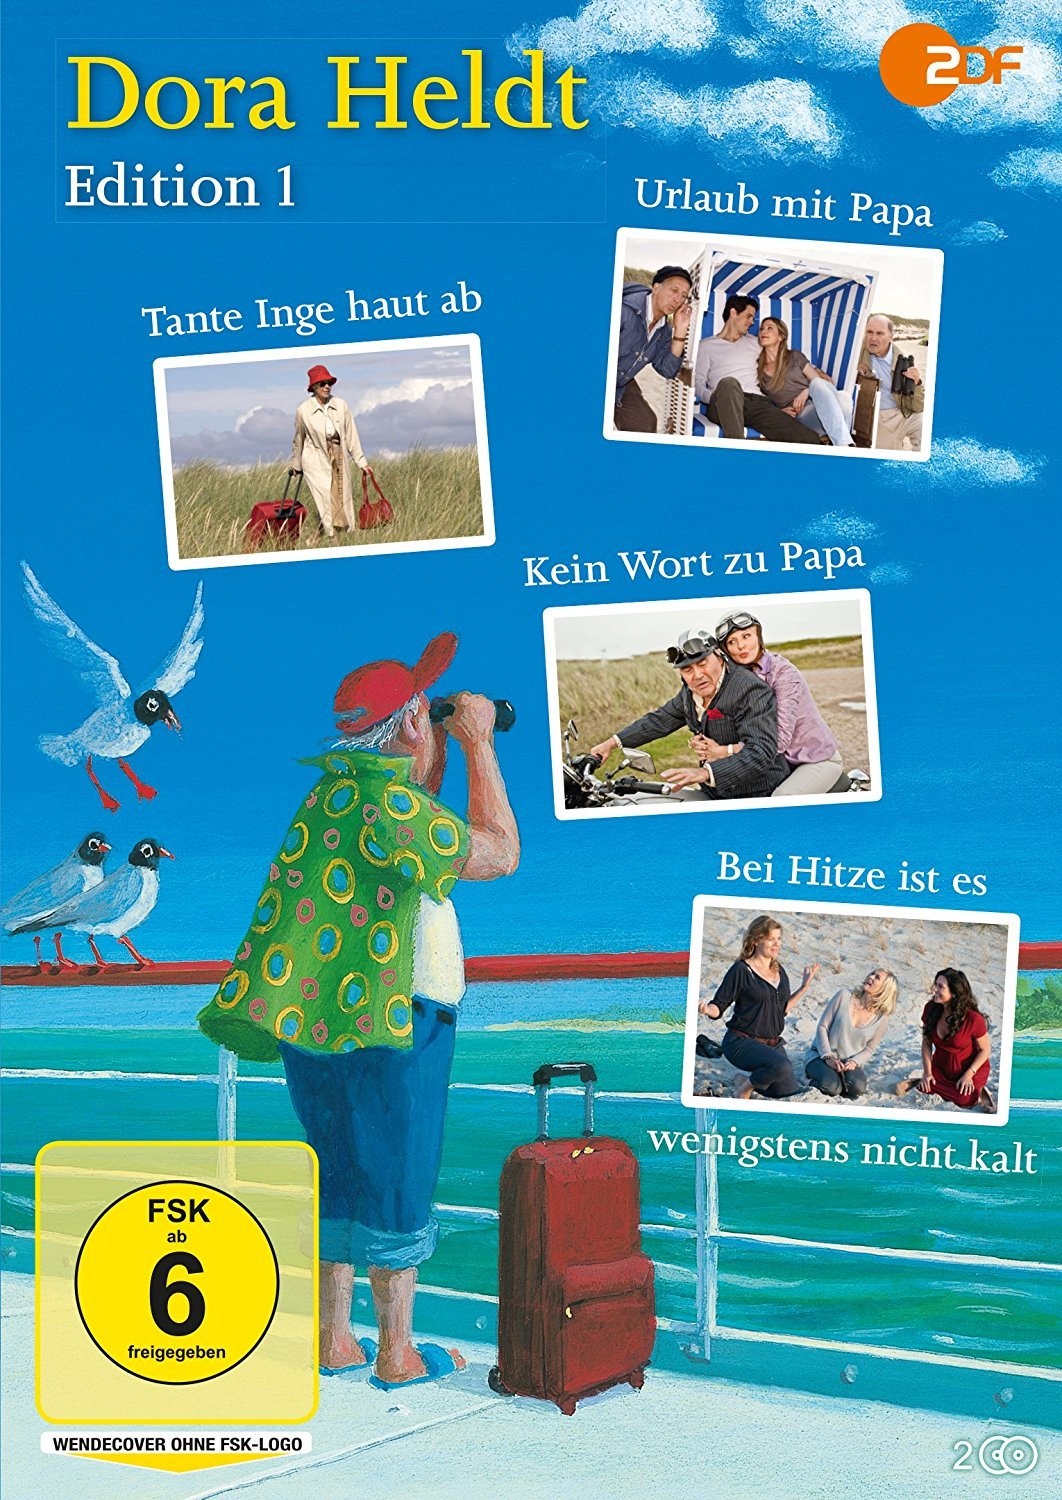 Dora Heldt Edition 1 (DVD)